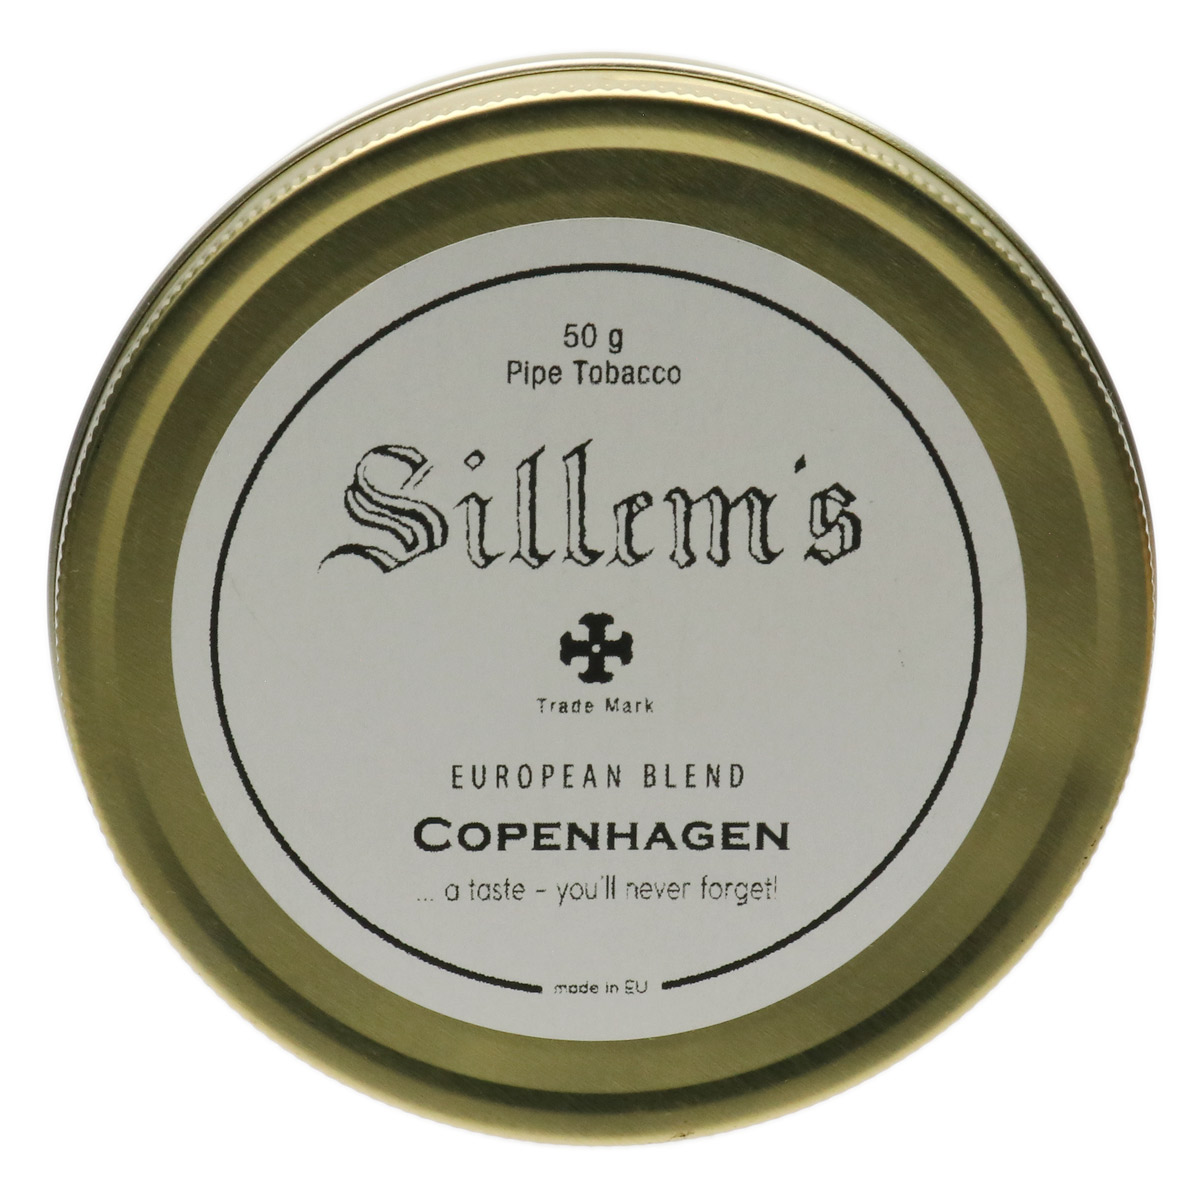 Sillem's: European Blend: Copenhagen 50g Pipe Tobacco